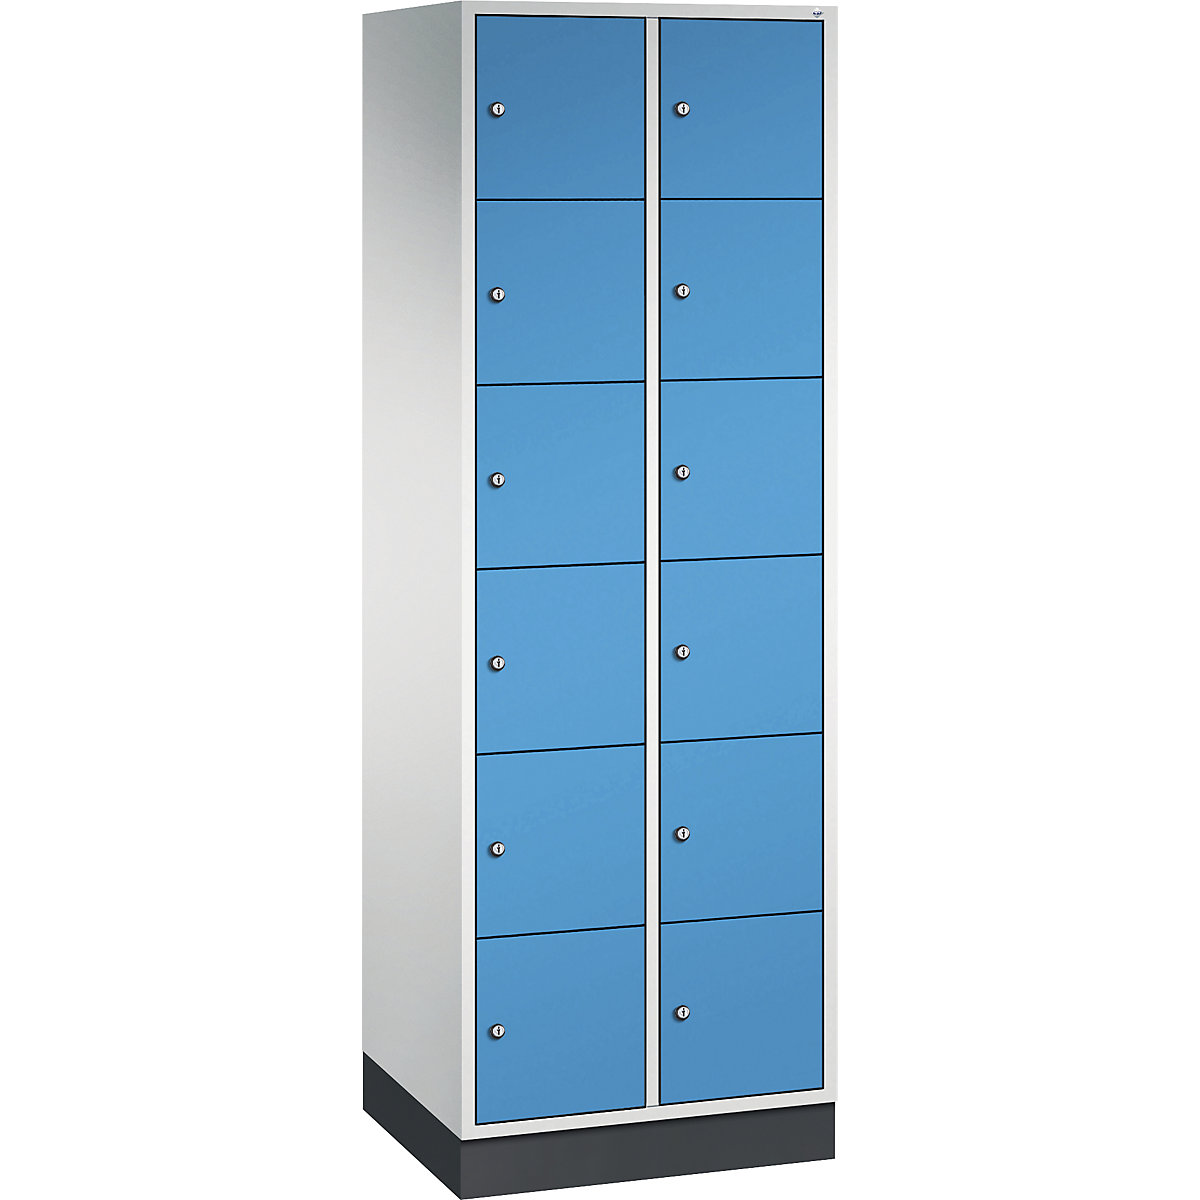 Vestiaire multicases en acier INTRO, casiers hauteur 285 mm – C+P, l x p 620 x 500 mm, 12 casiers, corps gris clair, portes bleu clair-5